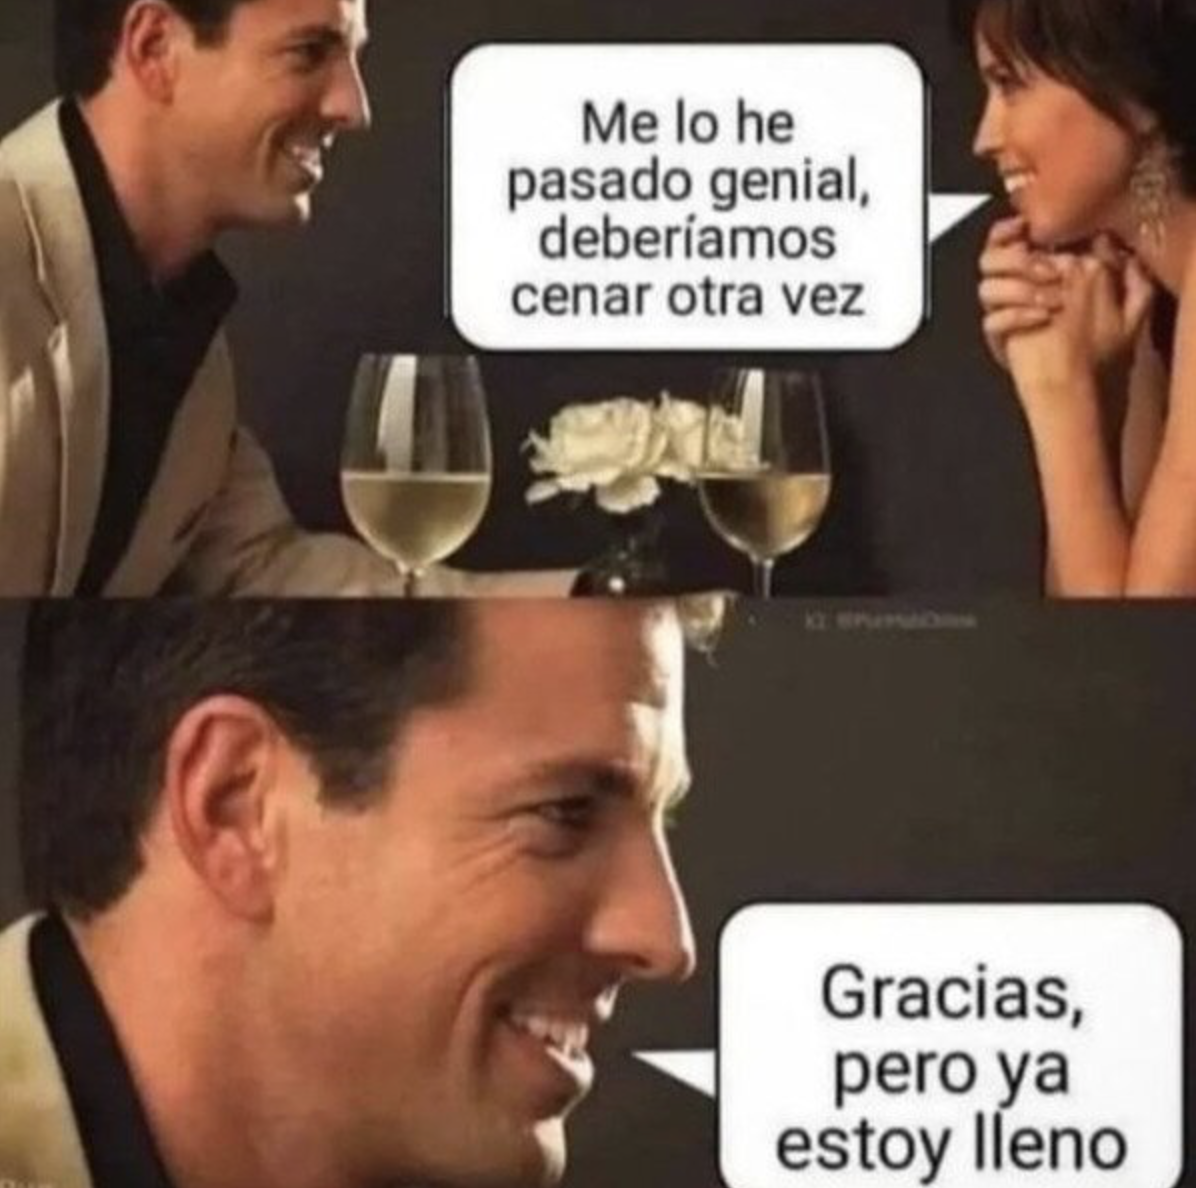 hispanic memes